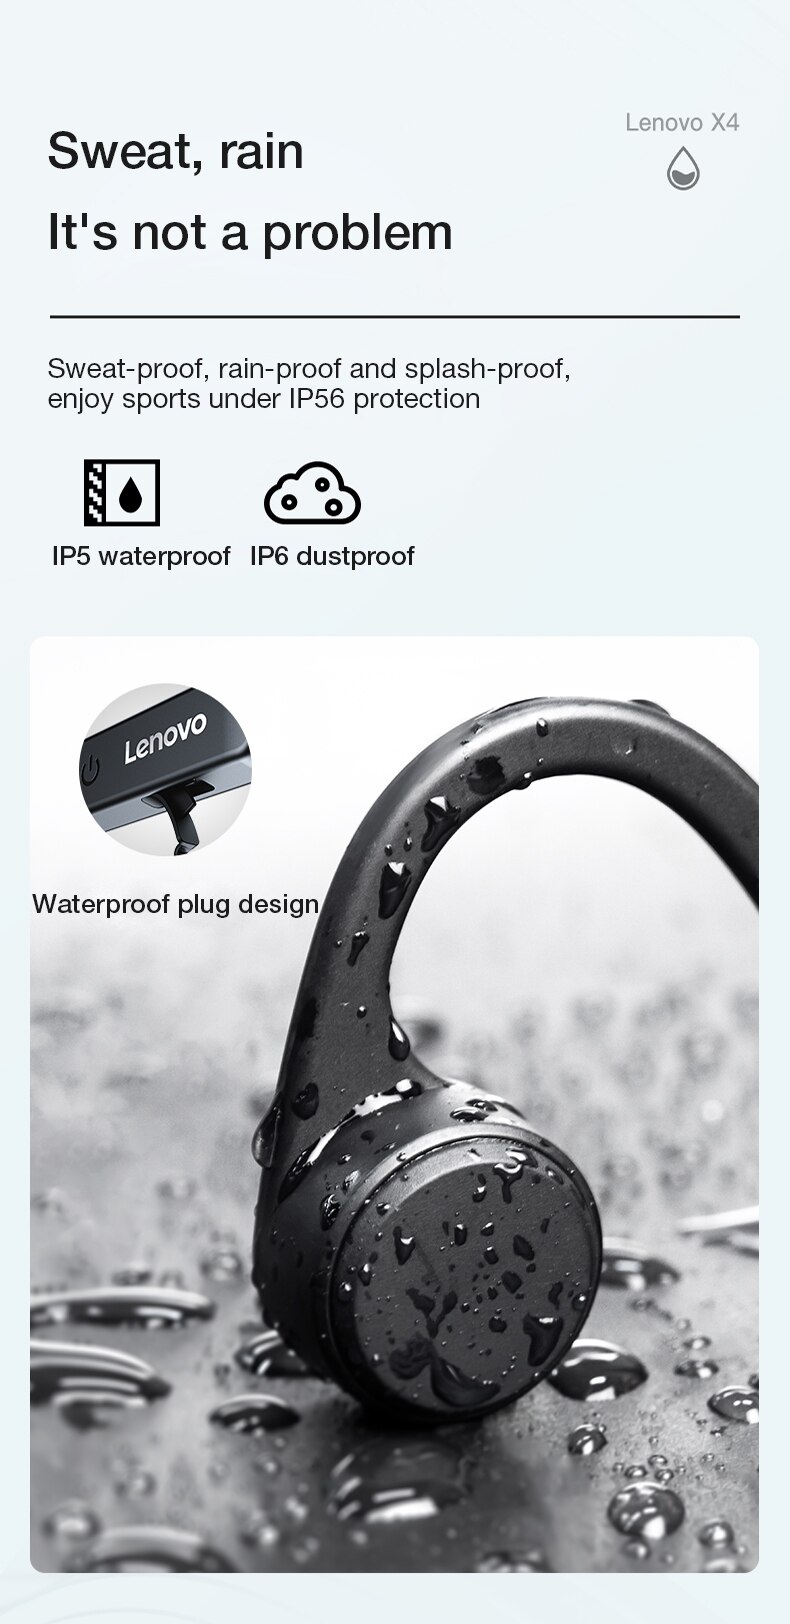 16123-ib6oss Lenovo-auriculares inalámbricos X4 con Bluetooth, cascos deportivos de conducción ósea, IPX5 resistentes al agua, batería de 2021 mAh, modo de reposo largo, 150